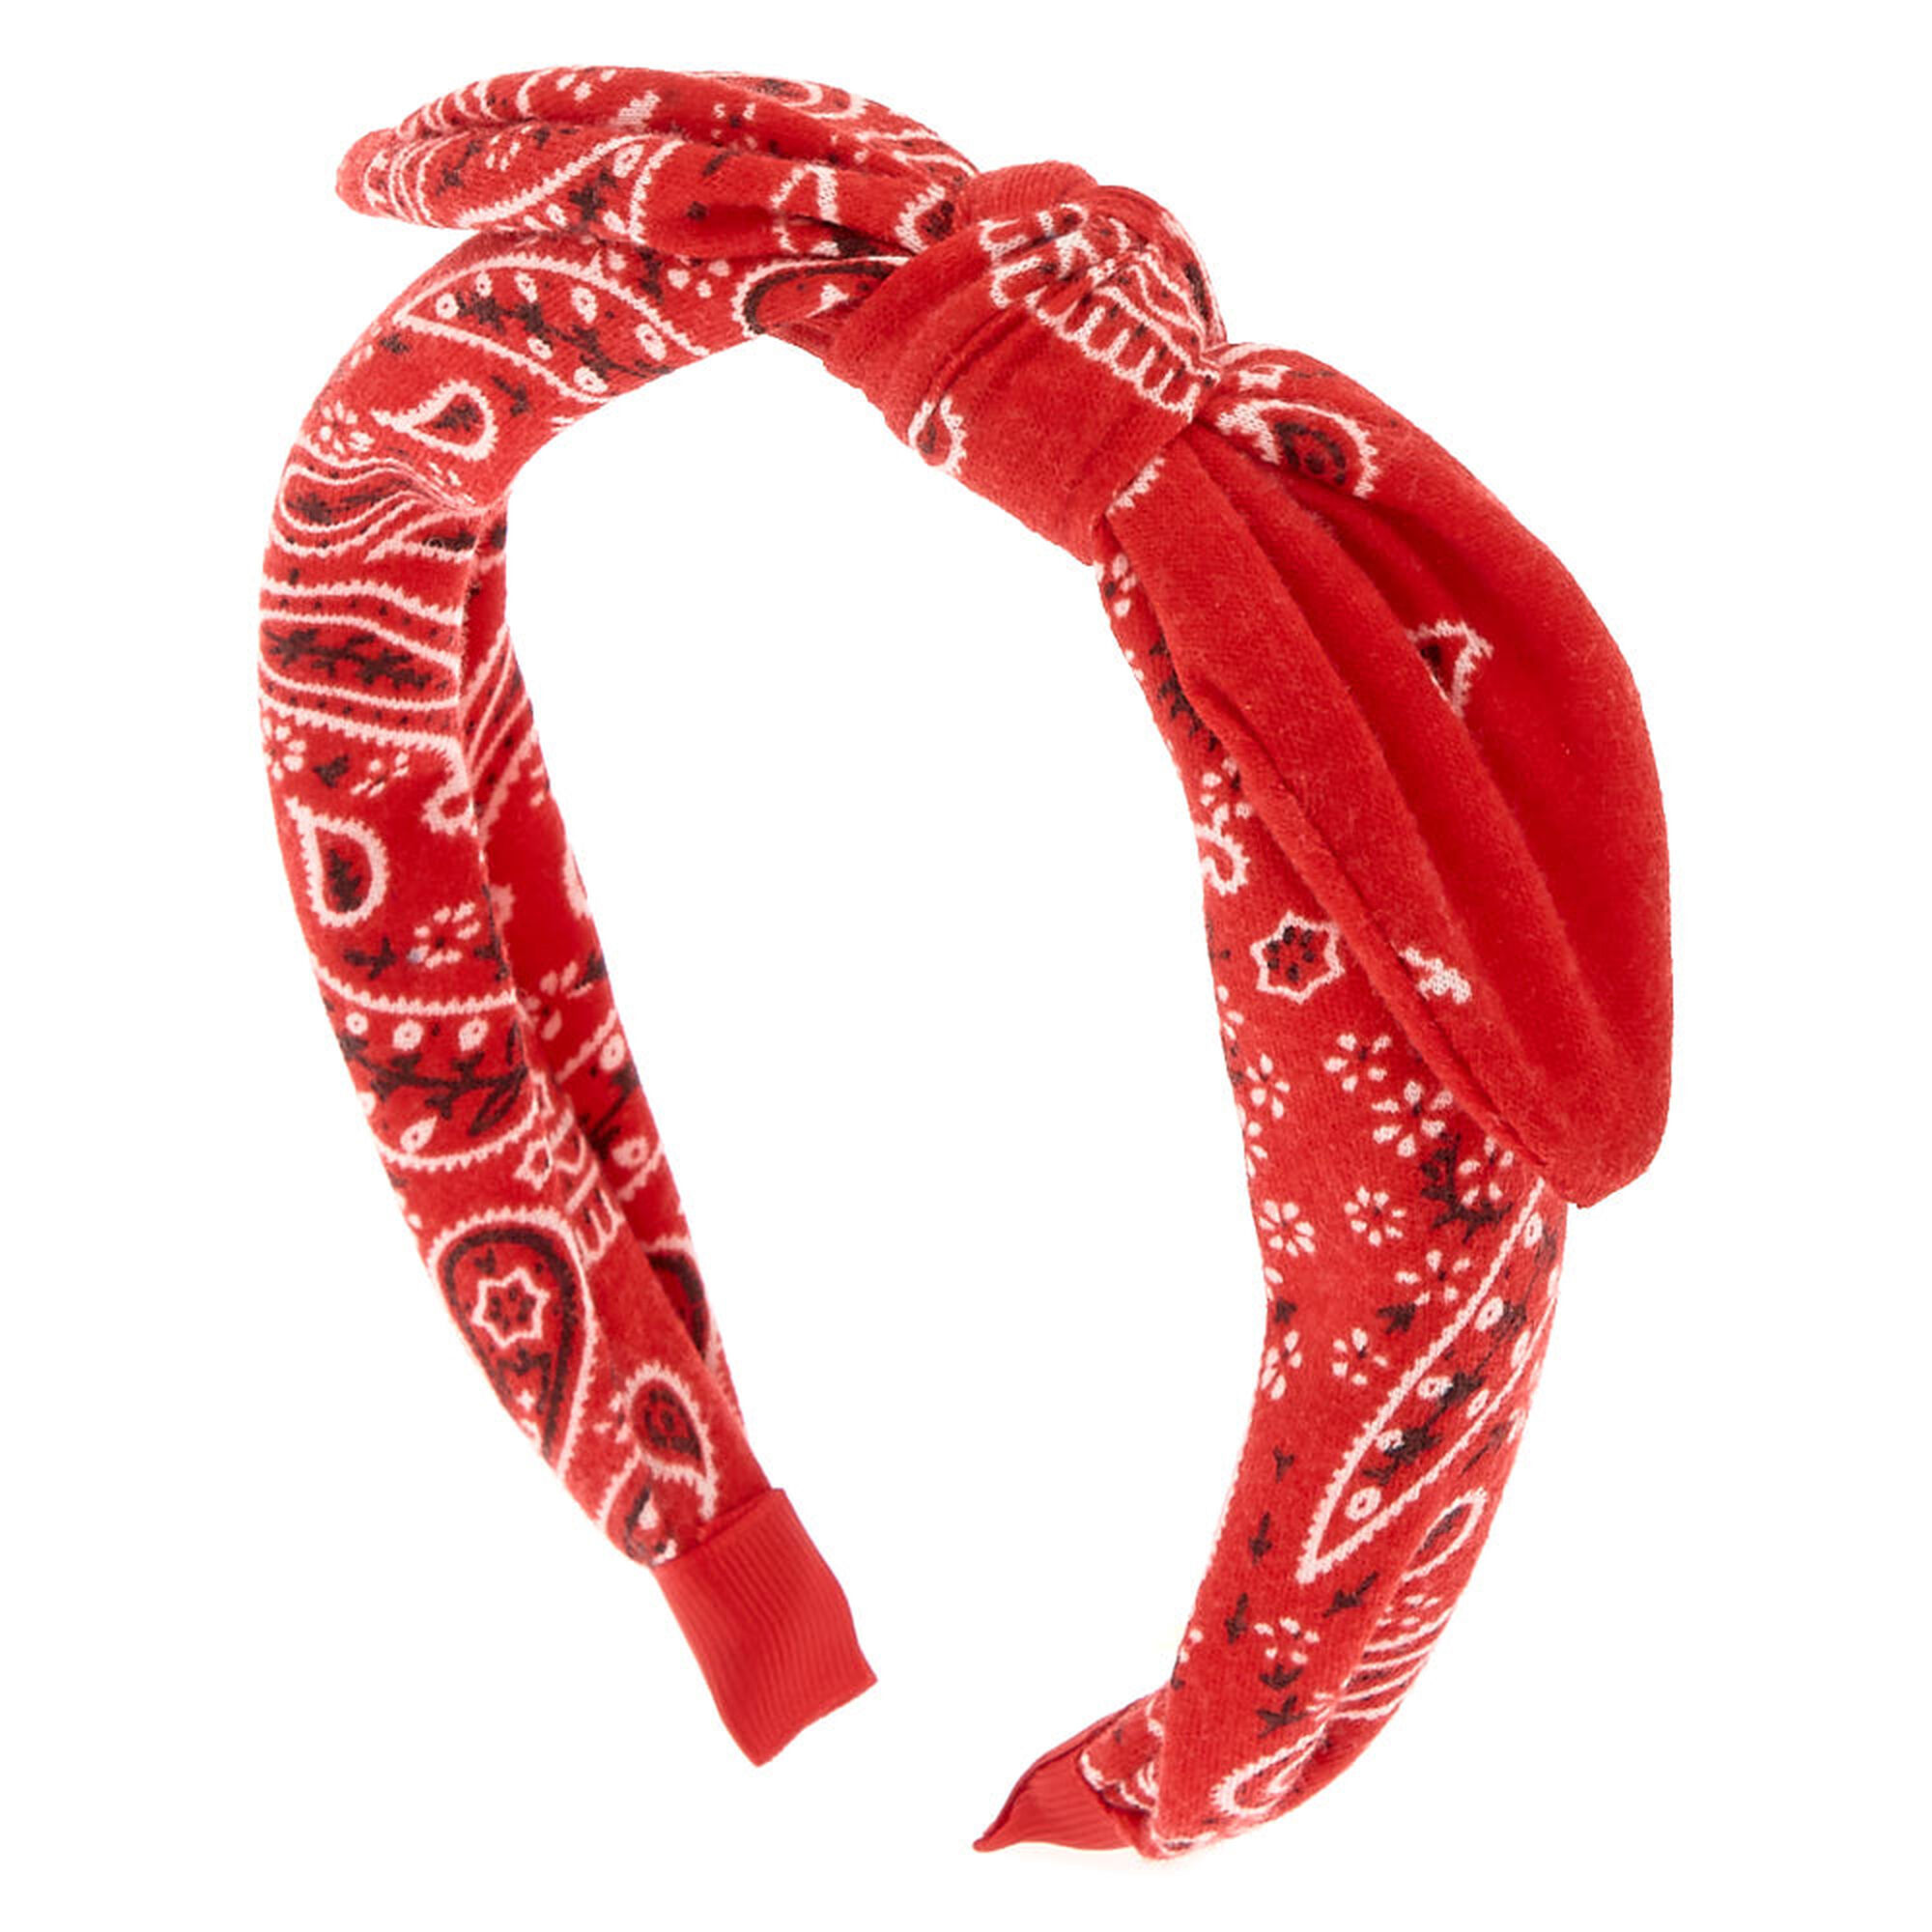 Bandana Knotted Bow Headband - Red